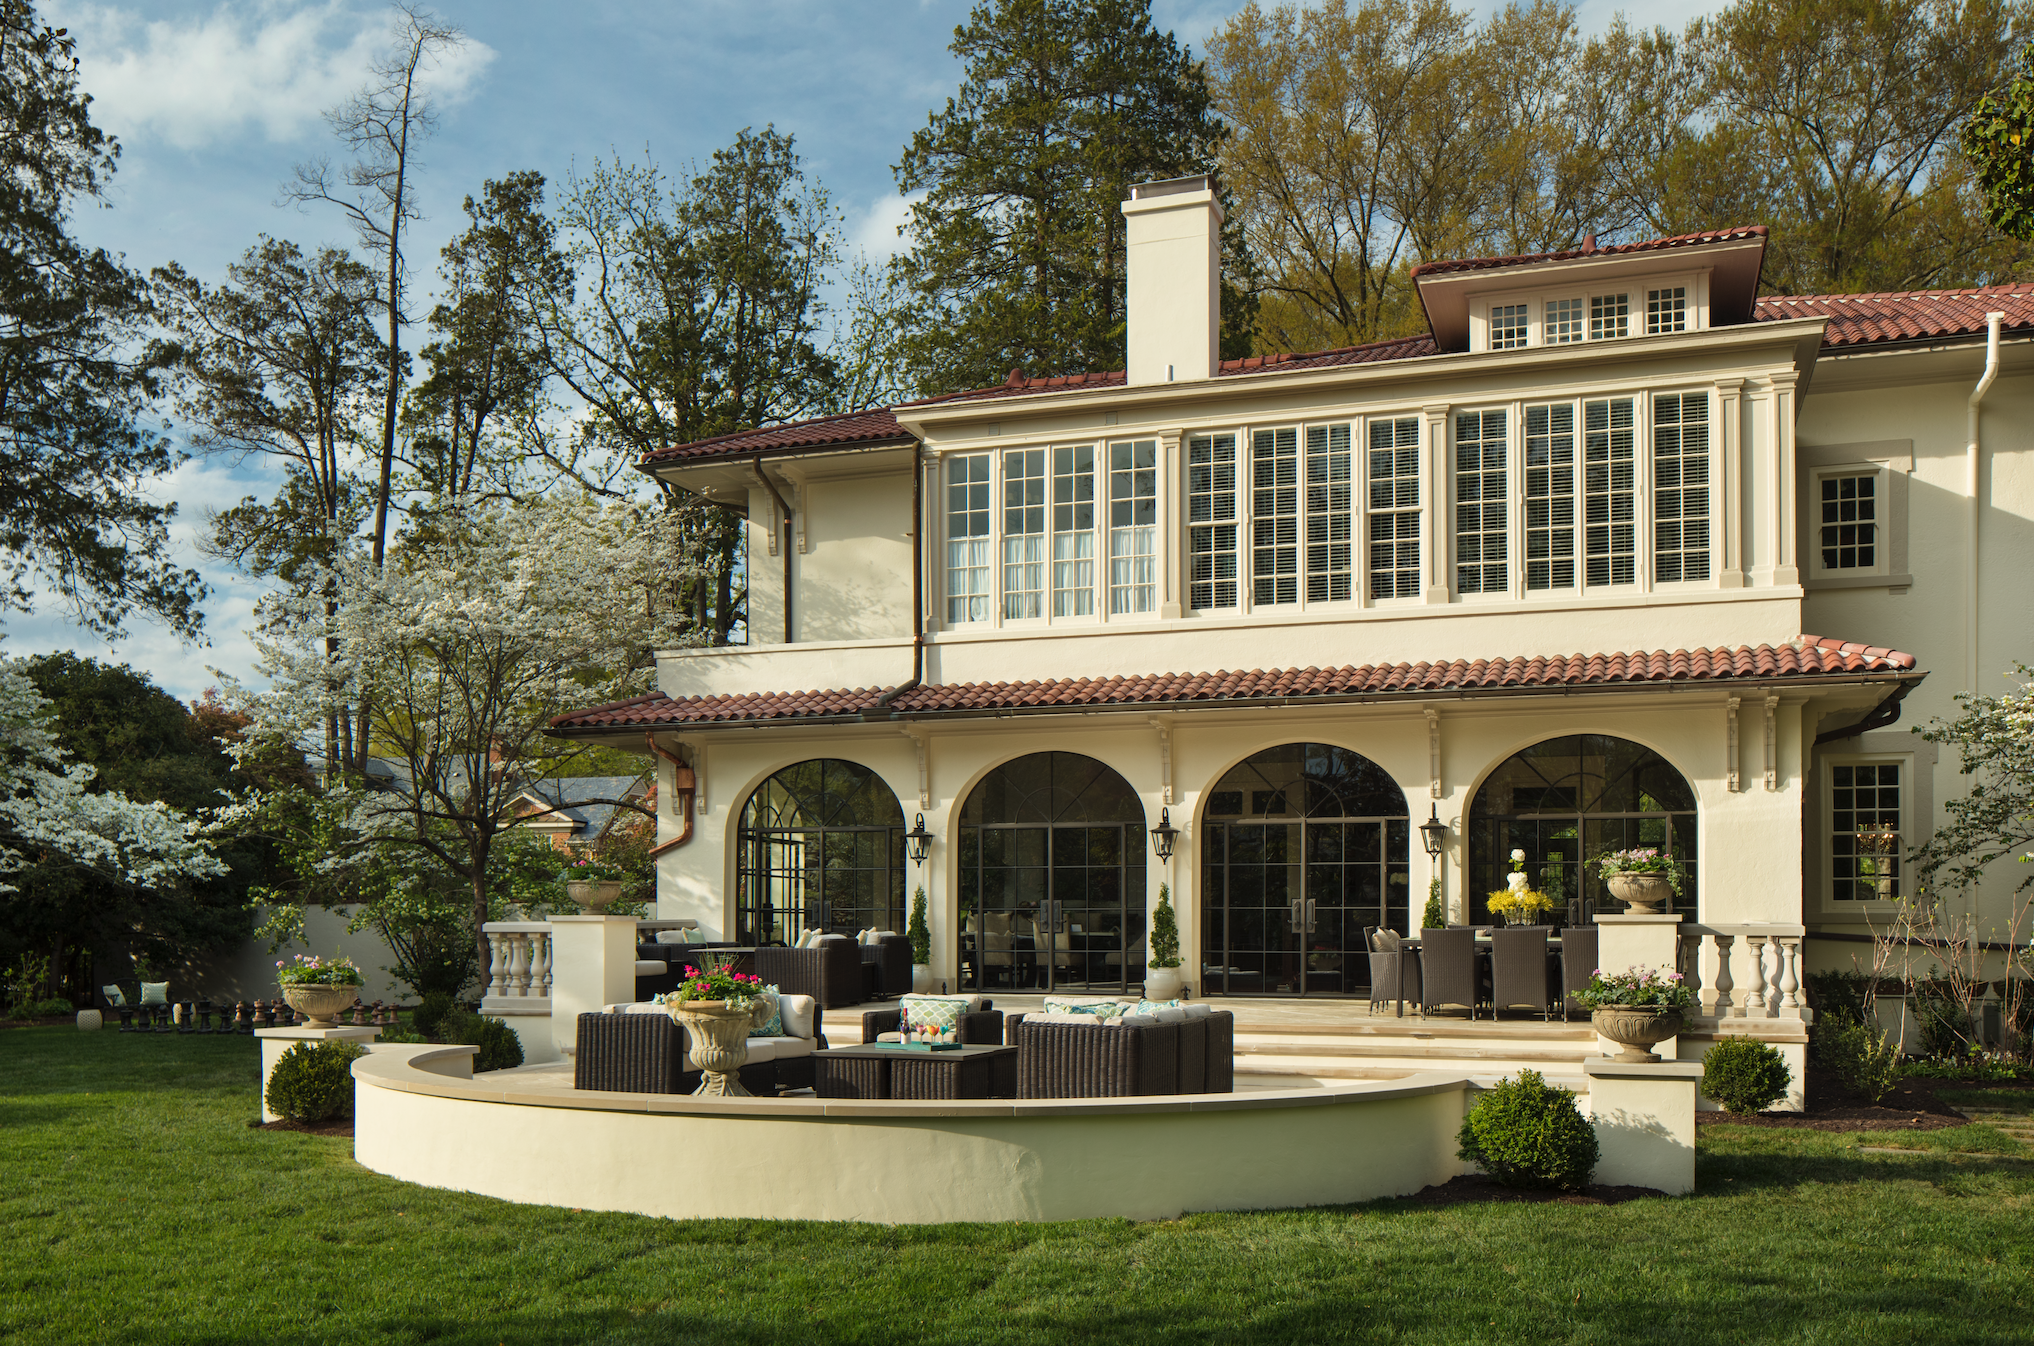 Marcia Fryer Landscape Designs | Baskerville Designed Mediterranean Inspired Home | Steel windows | Outdoor Dining | AFTER.png